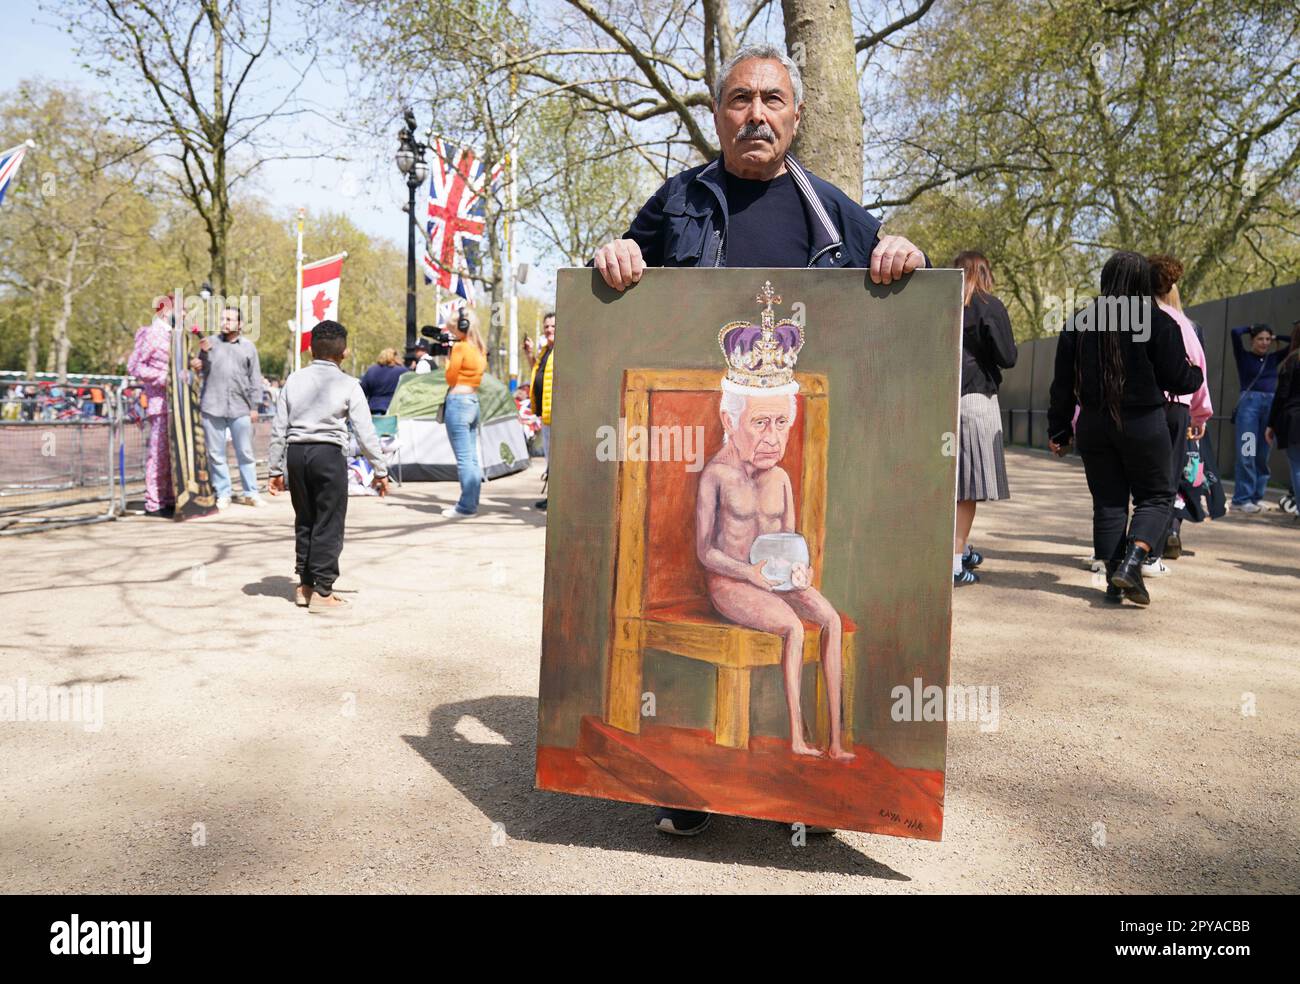 L'artiste politique Kaya Mar avec son dernier tableau sur le Mall, près du centre de Londres, devant le couronnement du roi Charles III le samedi 6 mai. Date de la photo: Mercredi 3 mai 2023. Banque D'Images